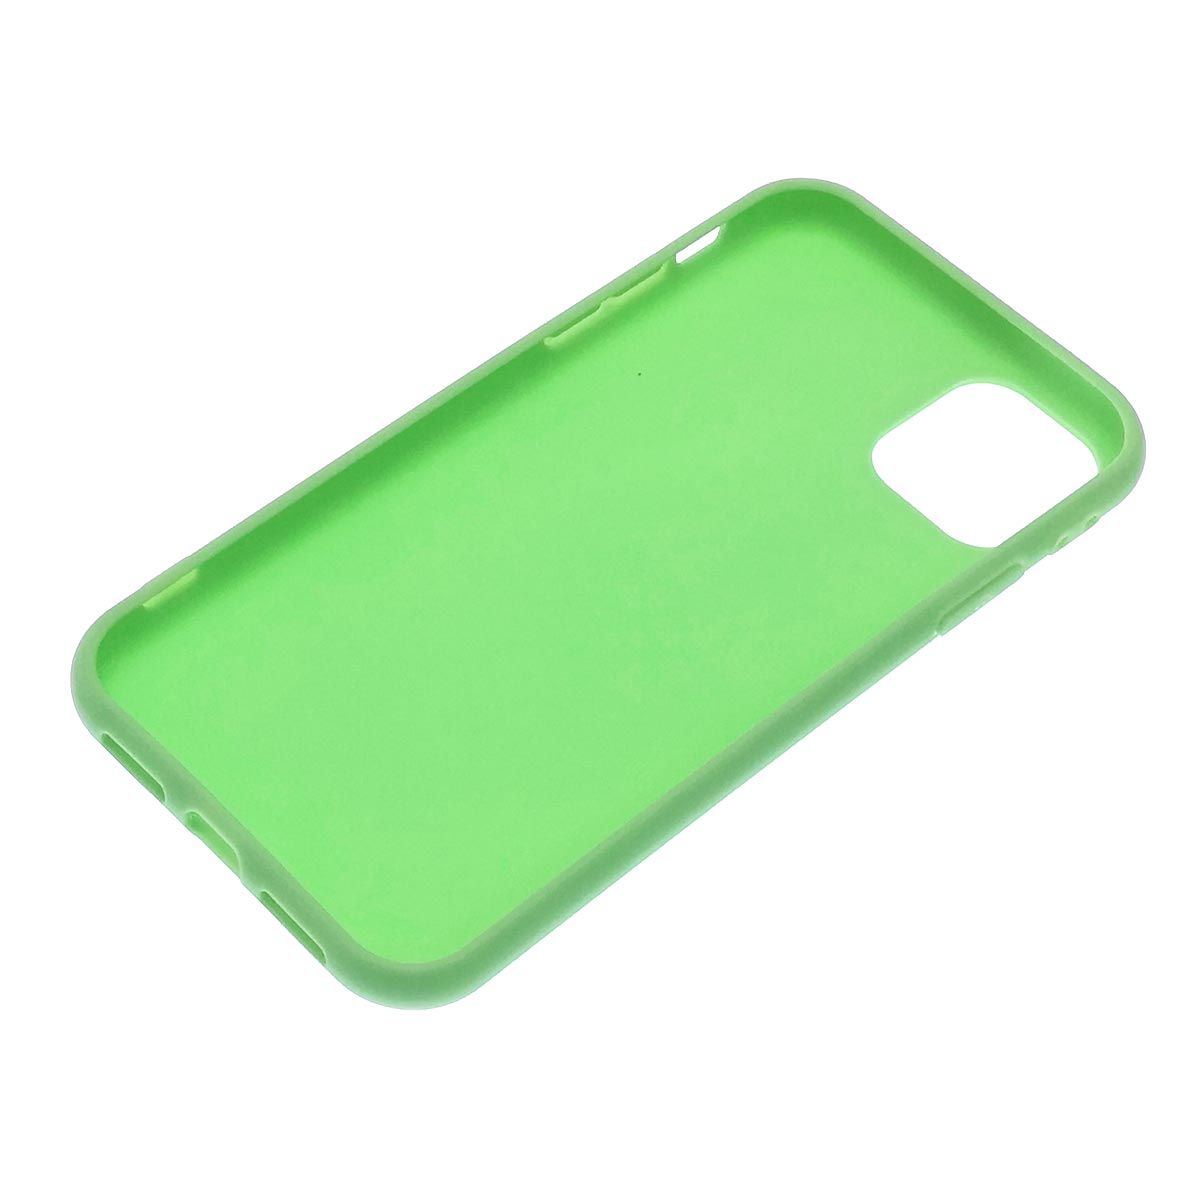 Чехол накладка для APPLE iPhone 11, силикон, матовый, цвет светло зеленый